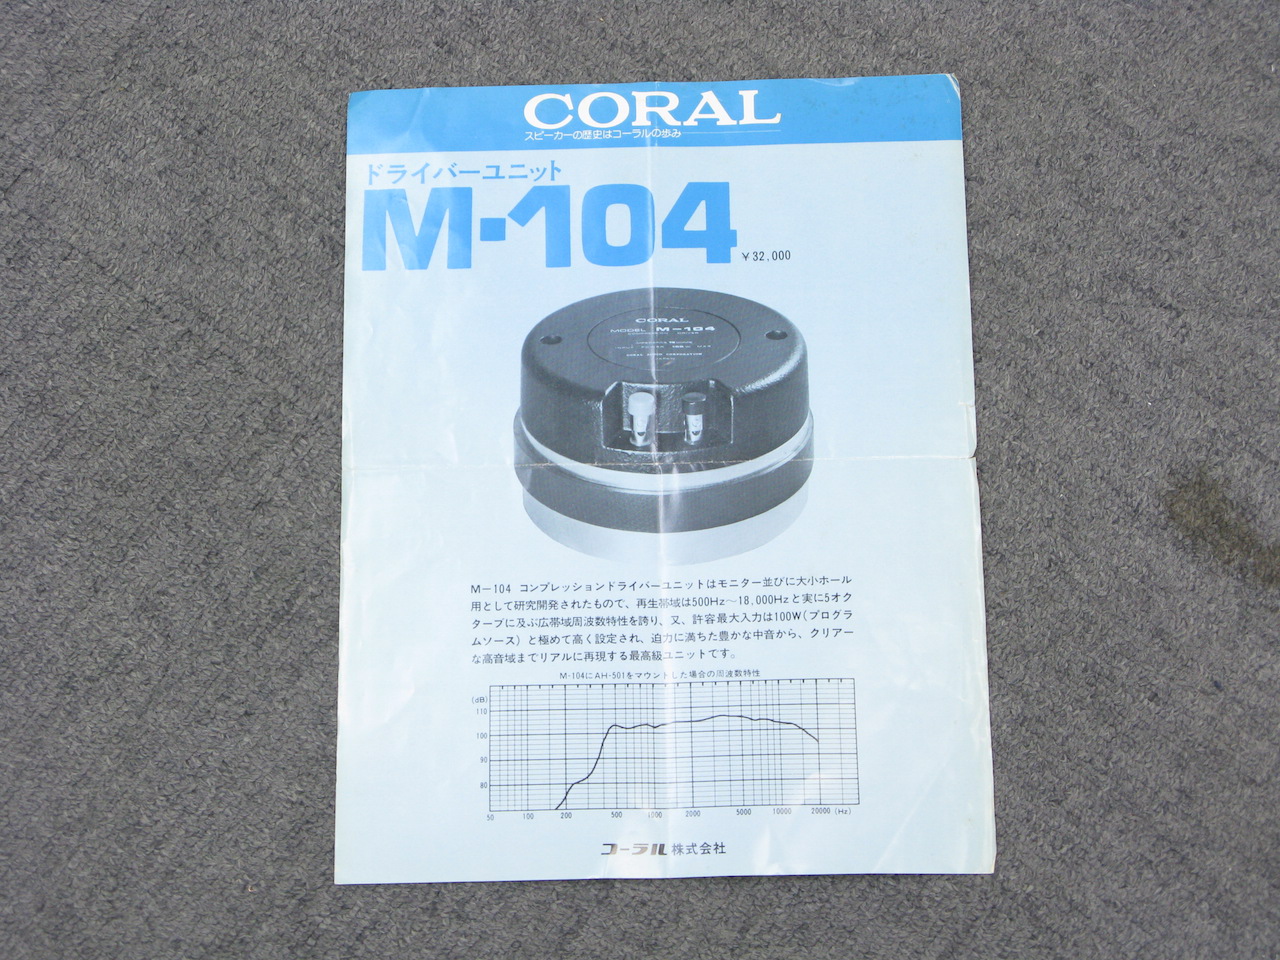 M-104 - Coral M-104 - Audiofanzine